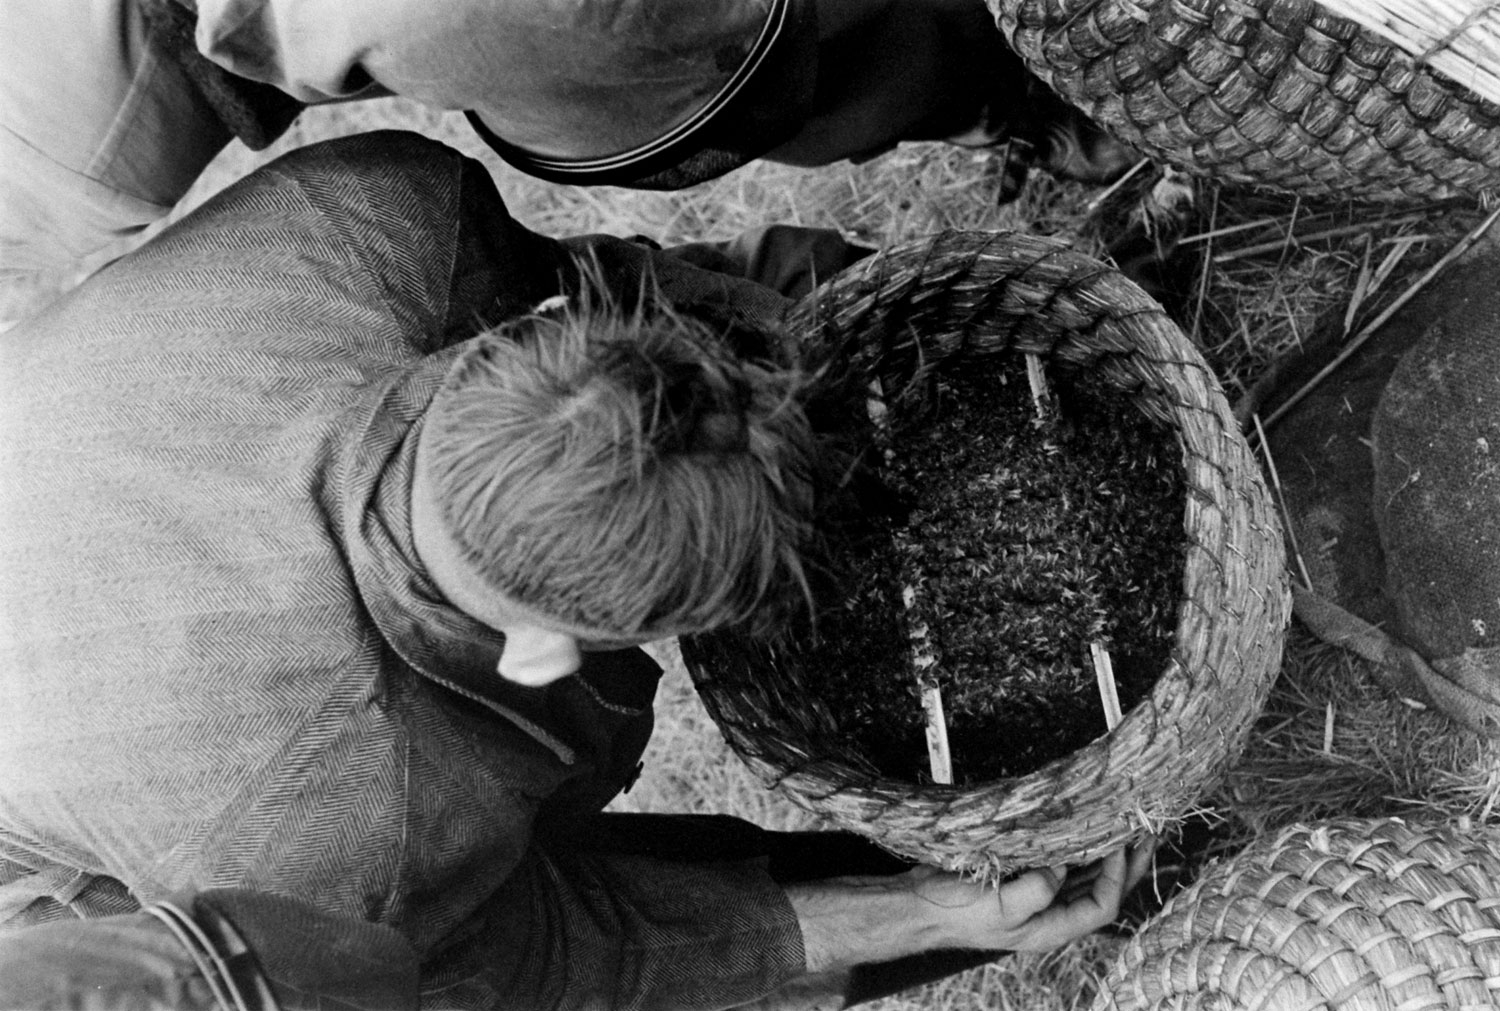 Bee market, Veenendaal, Netherlands, 1956.